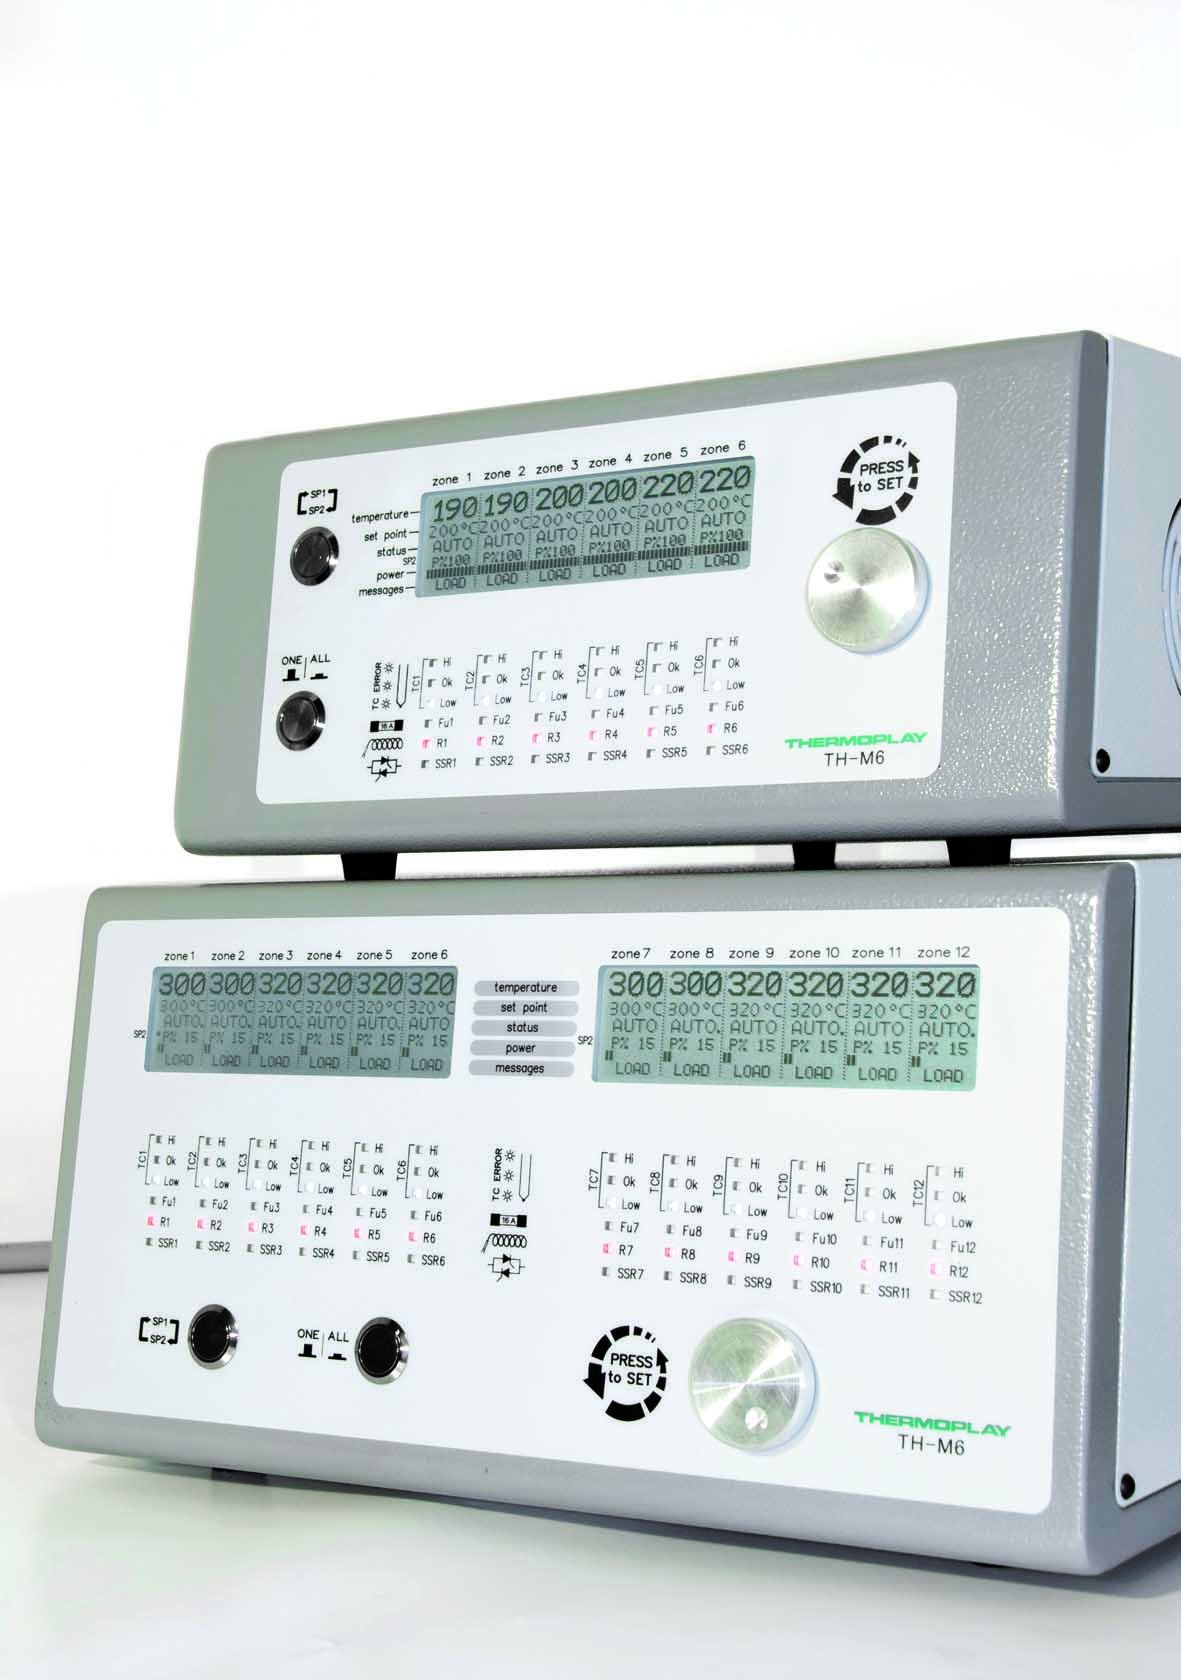 TH-M6 Temperature controller